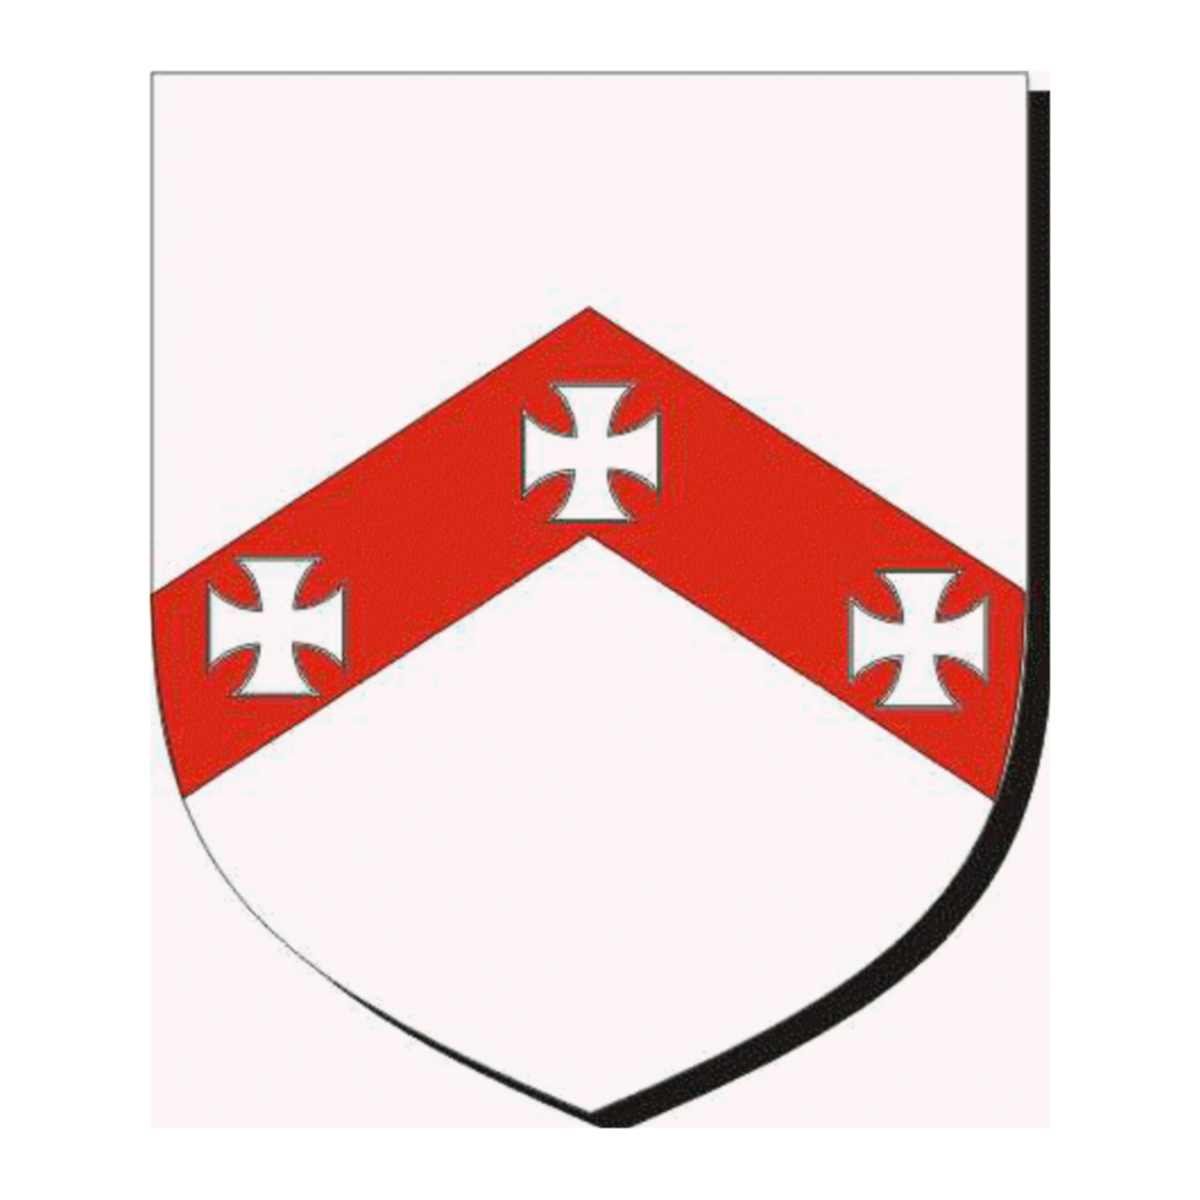 Wappen der FamiliePeck